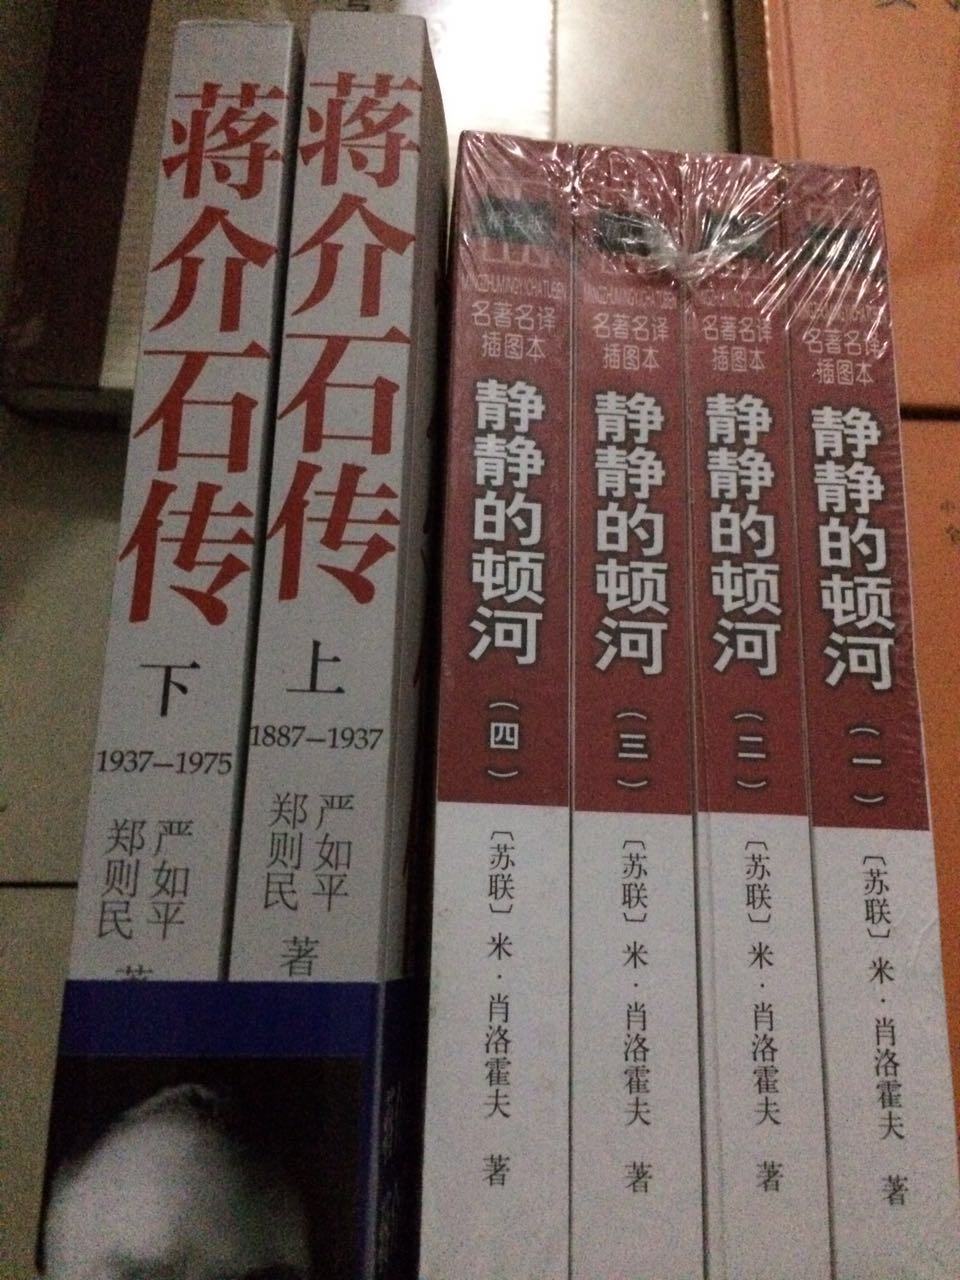 中华书局出版的蒋介石传，应该是比较客观吧。